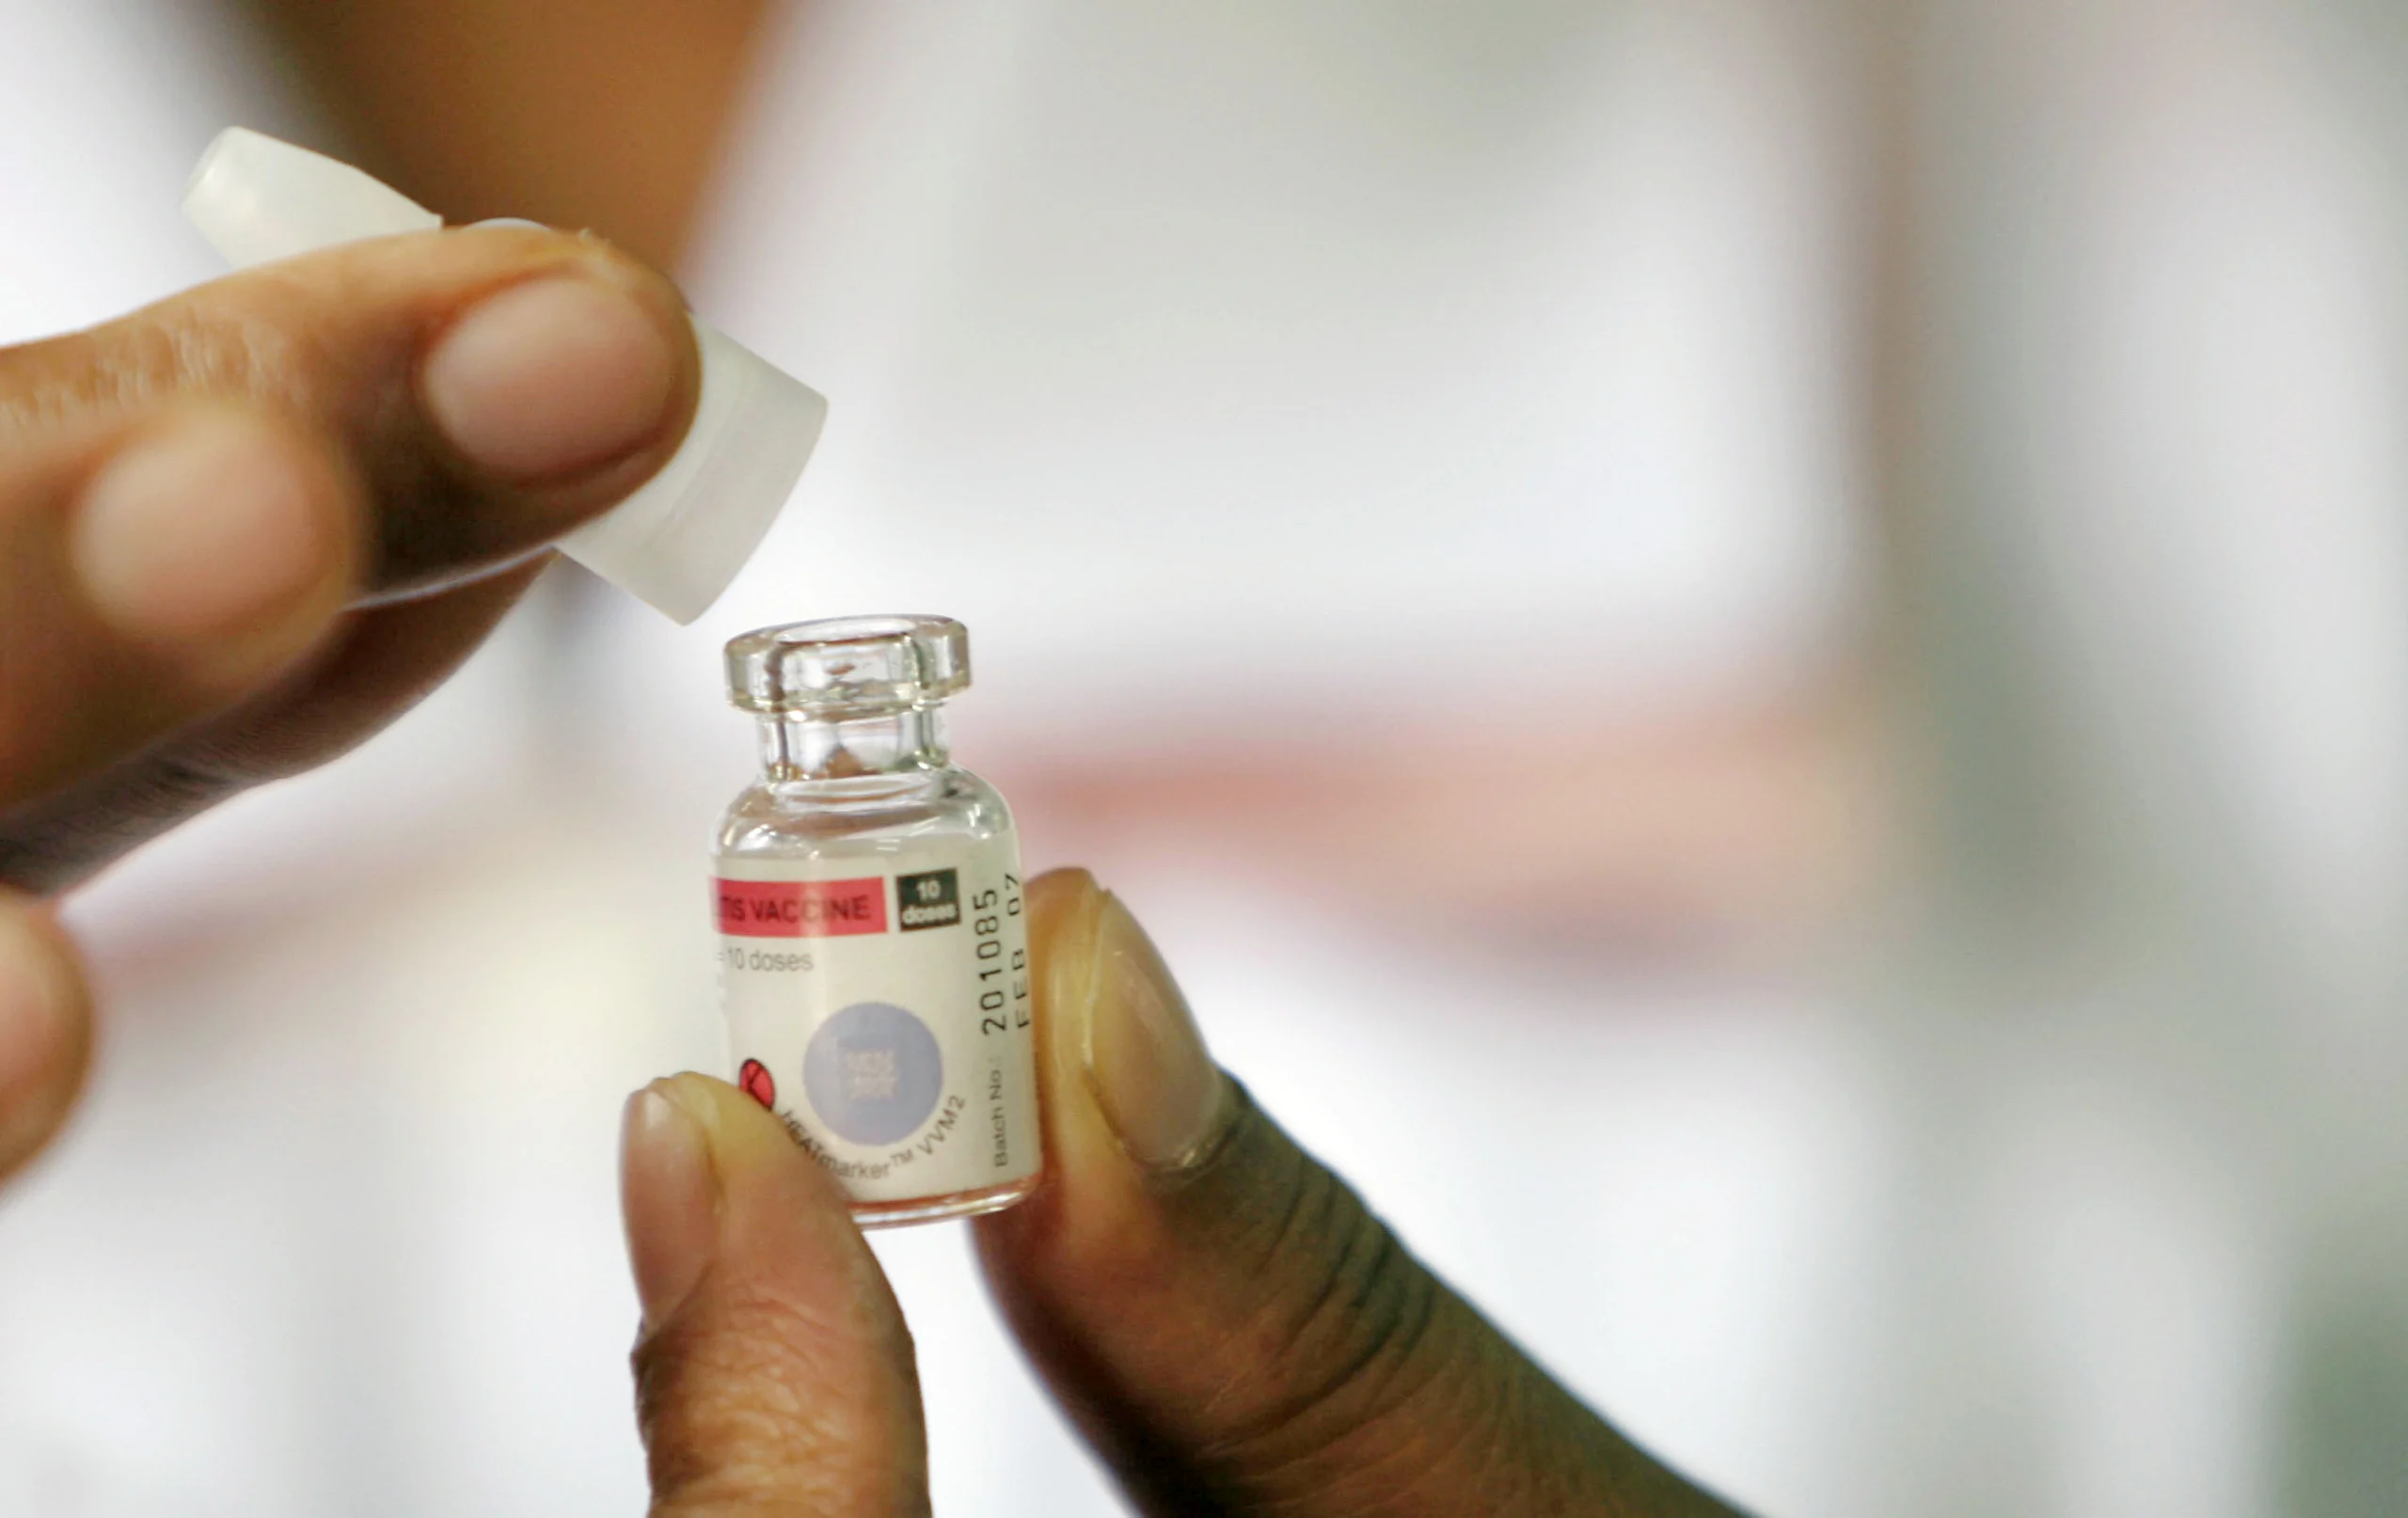 Registran el primer caso natural de poliomielitis en EE. UU. desde 1979